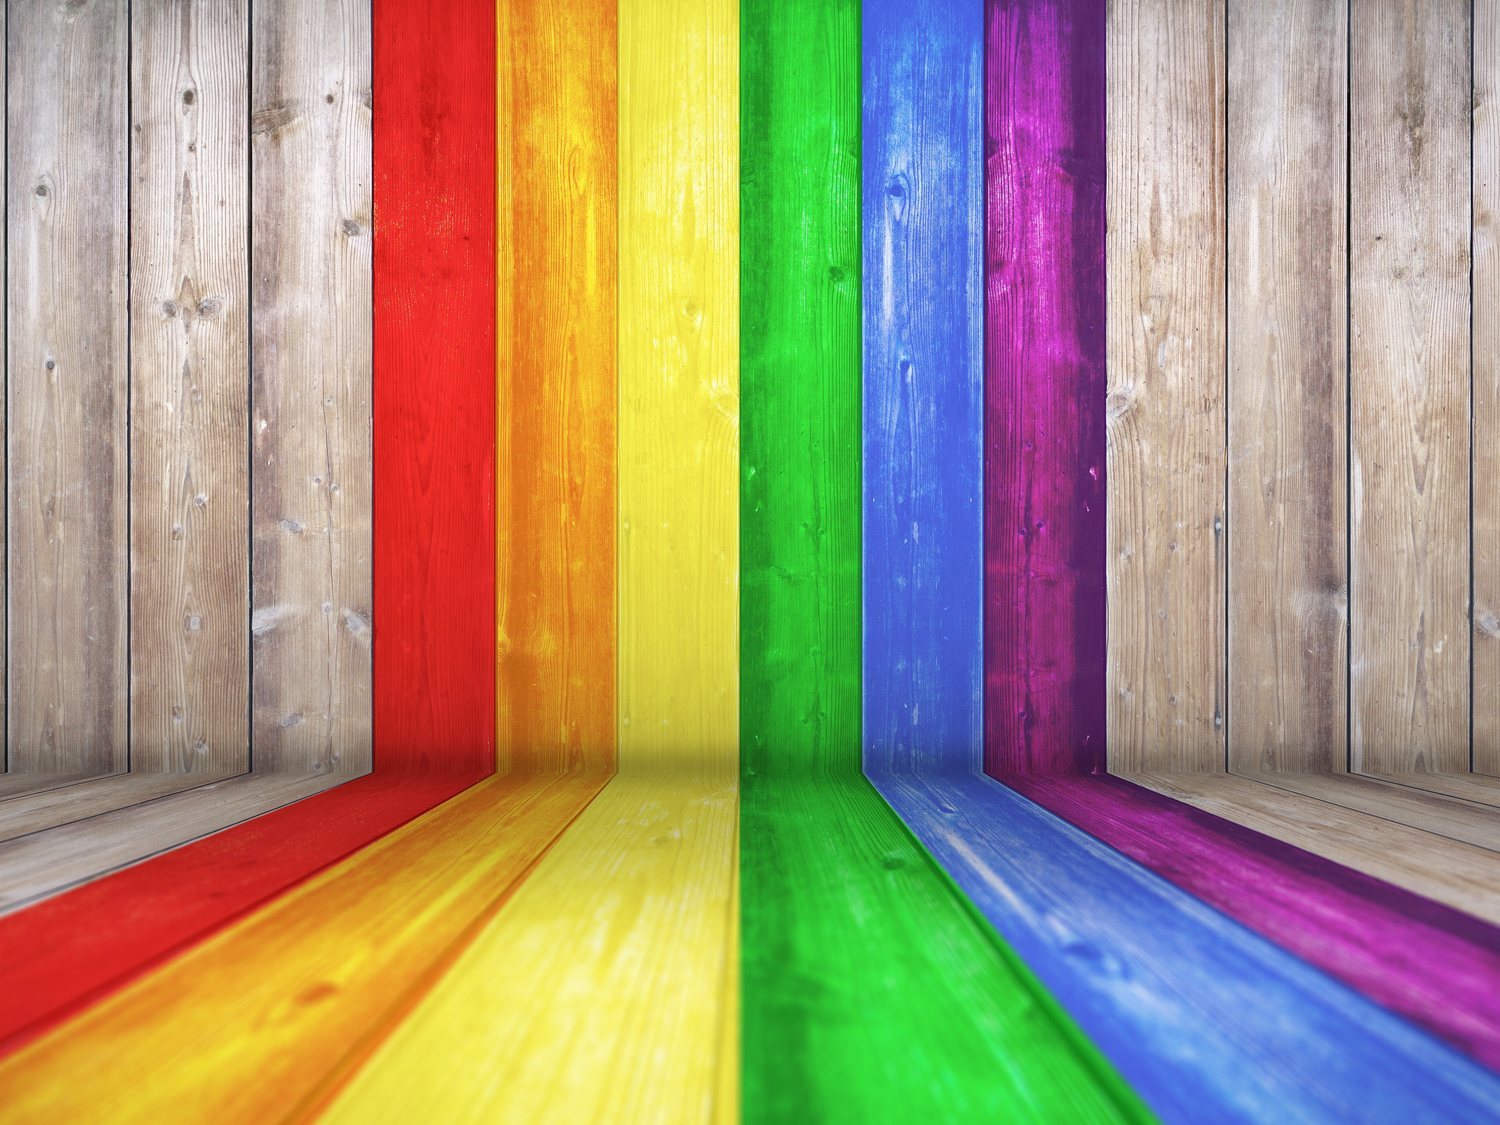 Expulsada de un colegio cristiano por "representar el orgullo gay" por llevar un jersey arcoíris